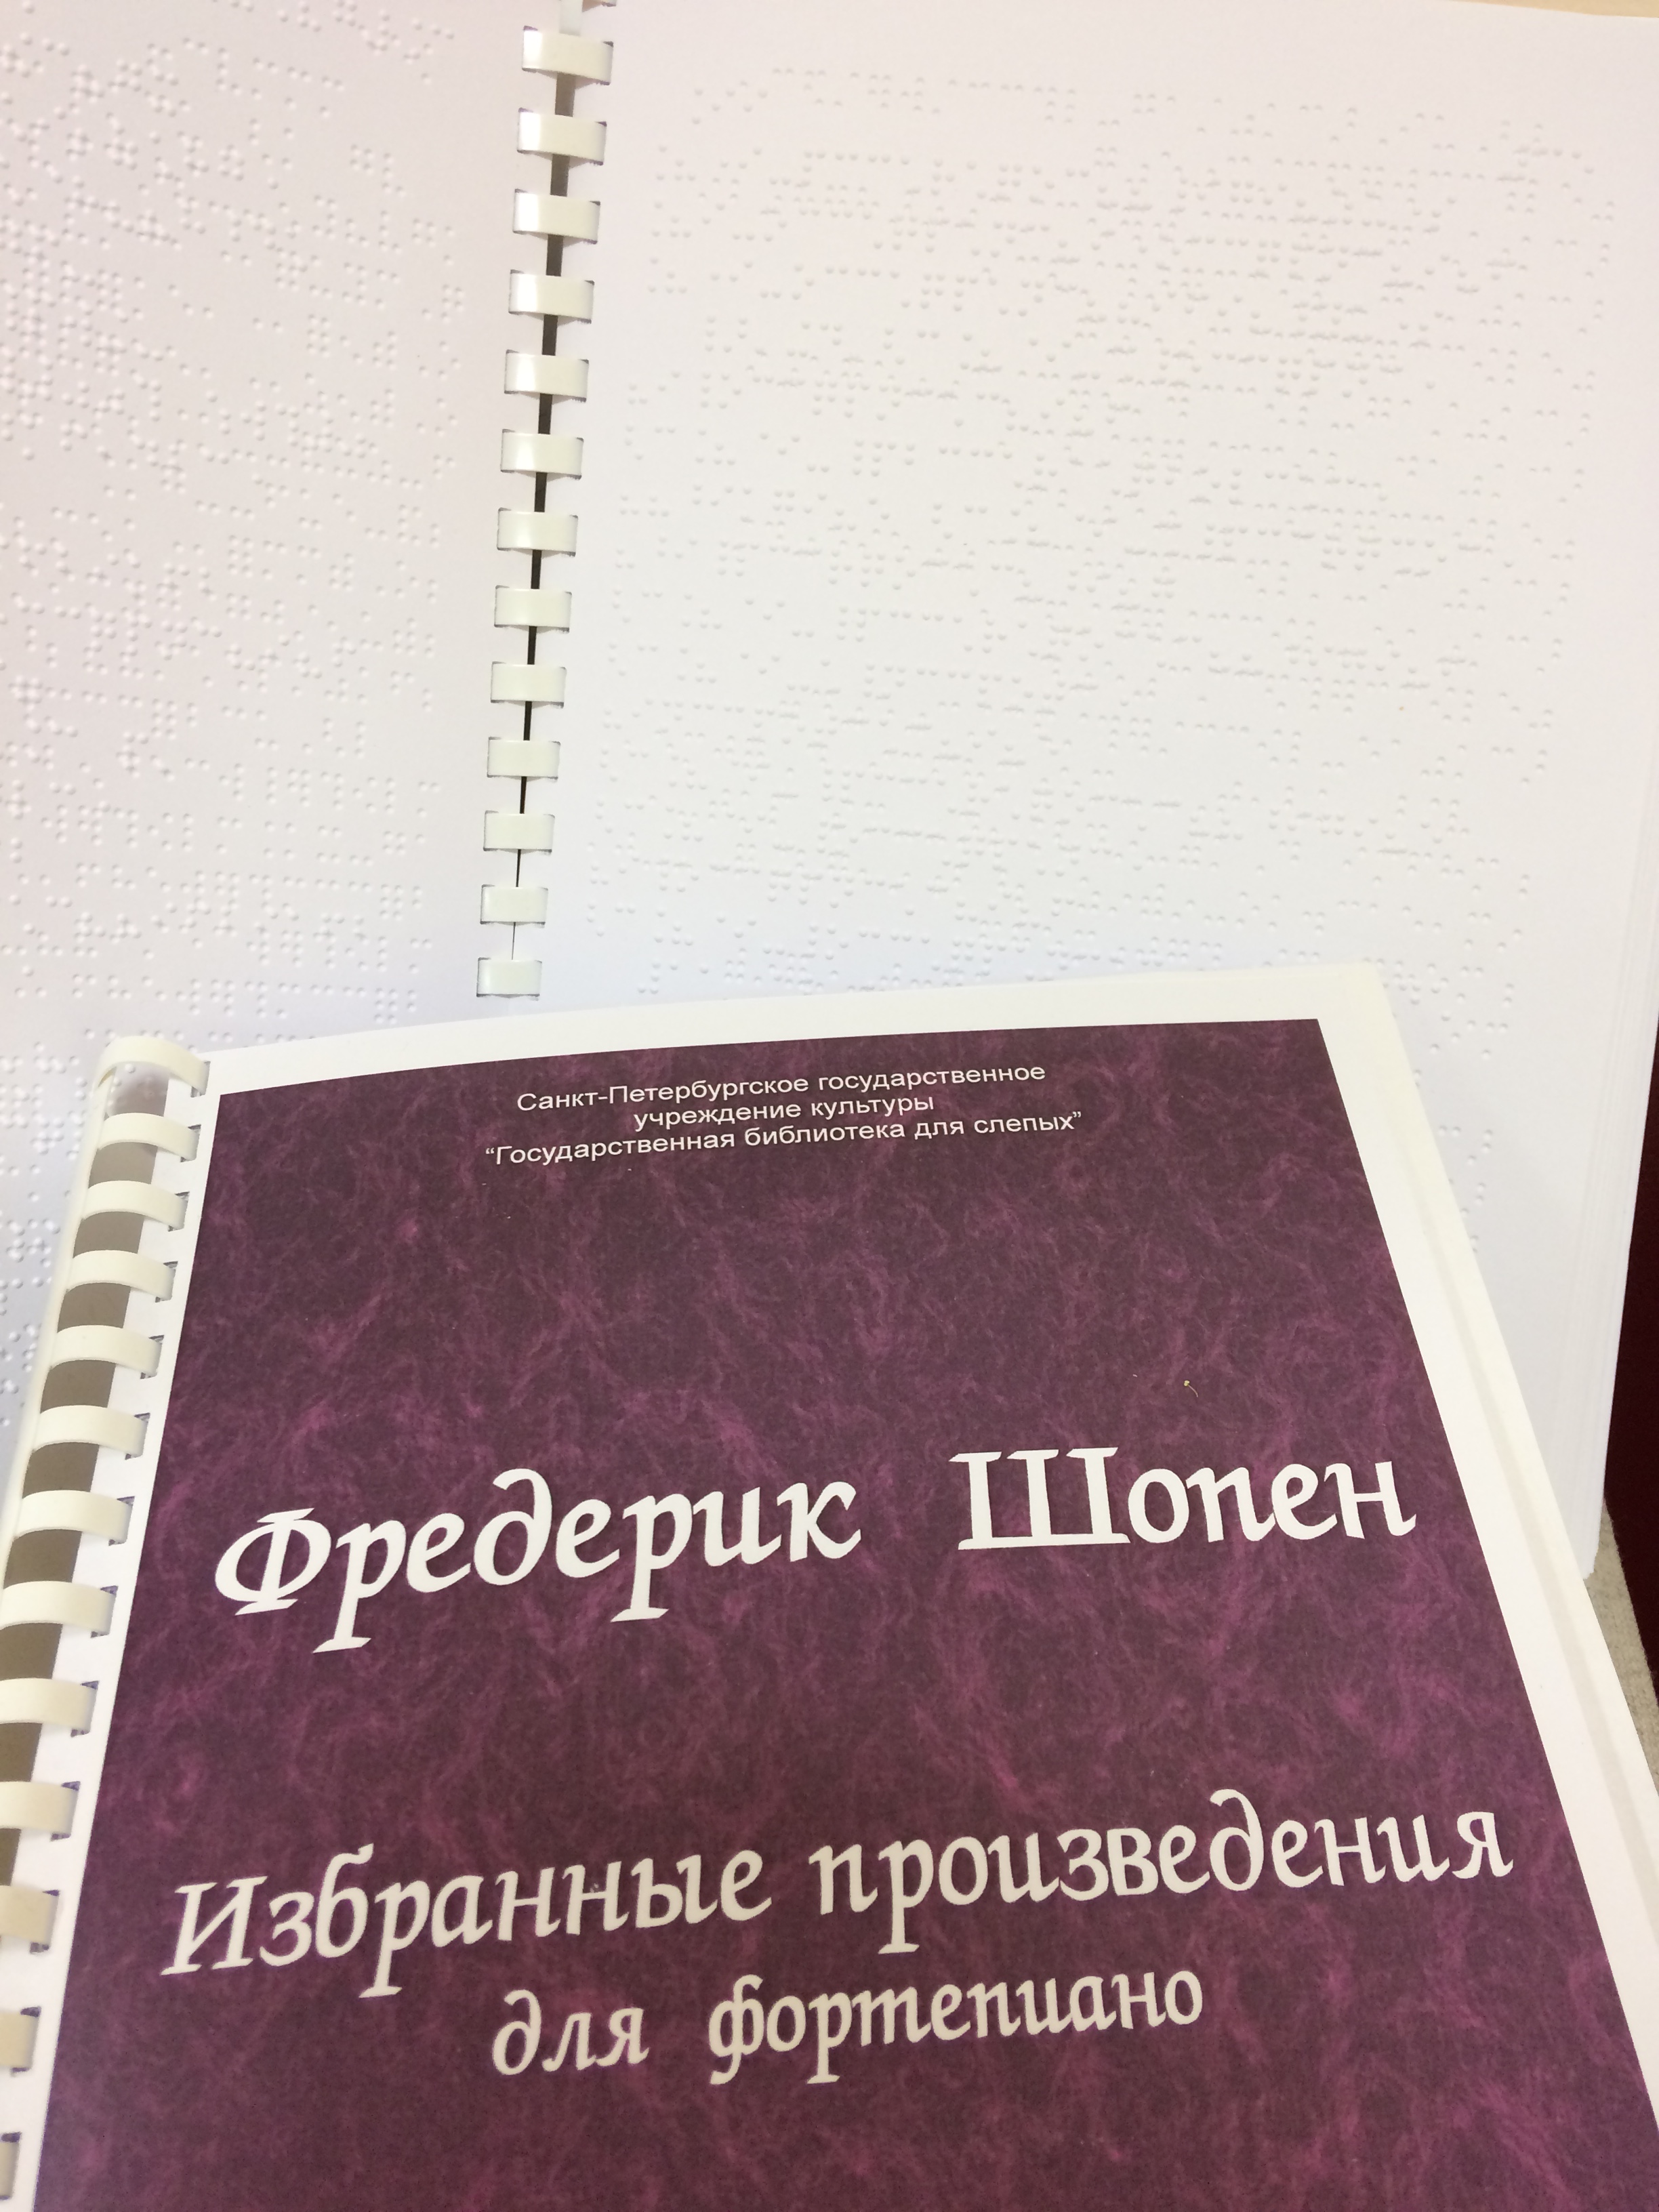 Обложка и разворот нотного сборника произведений Ф.Шопена рельефно-точечного шрифта.